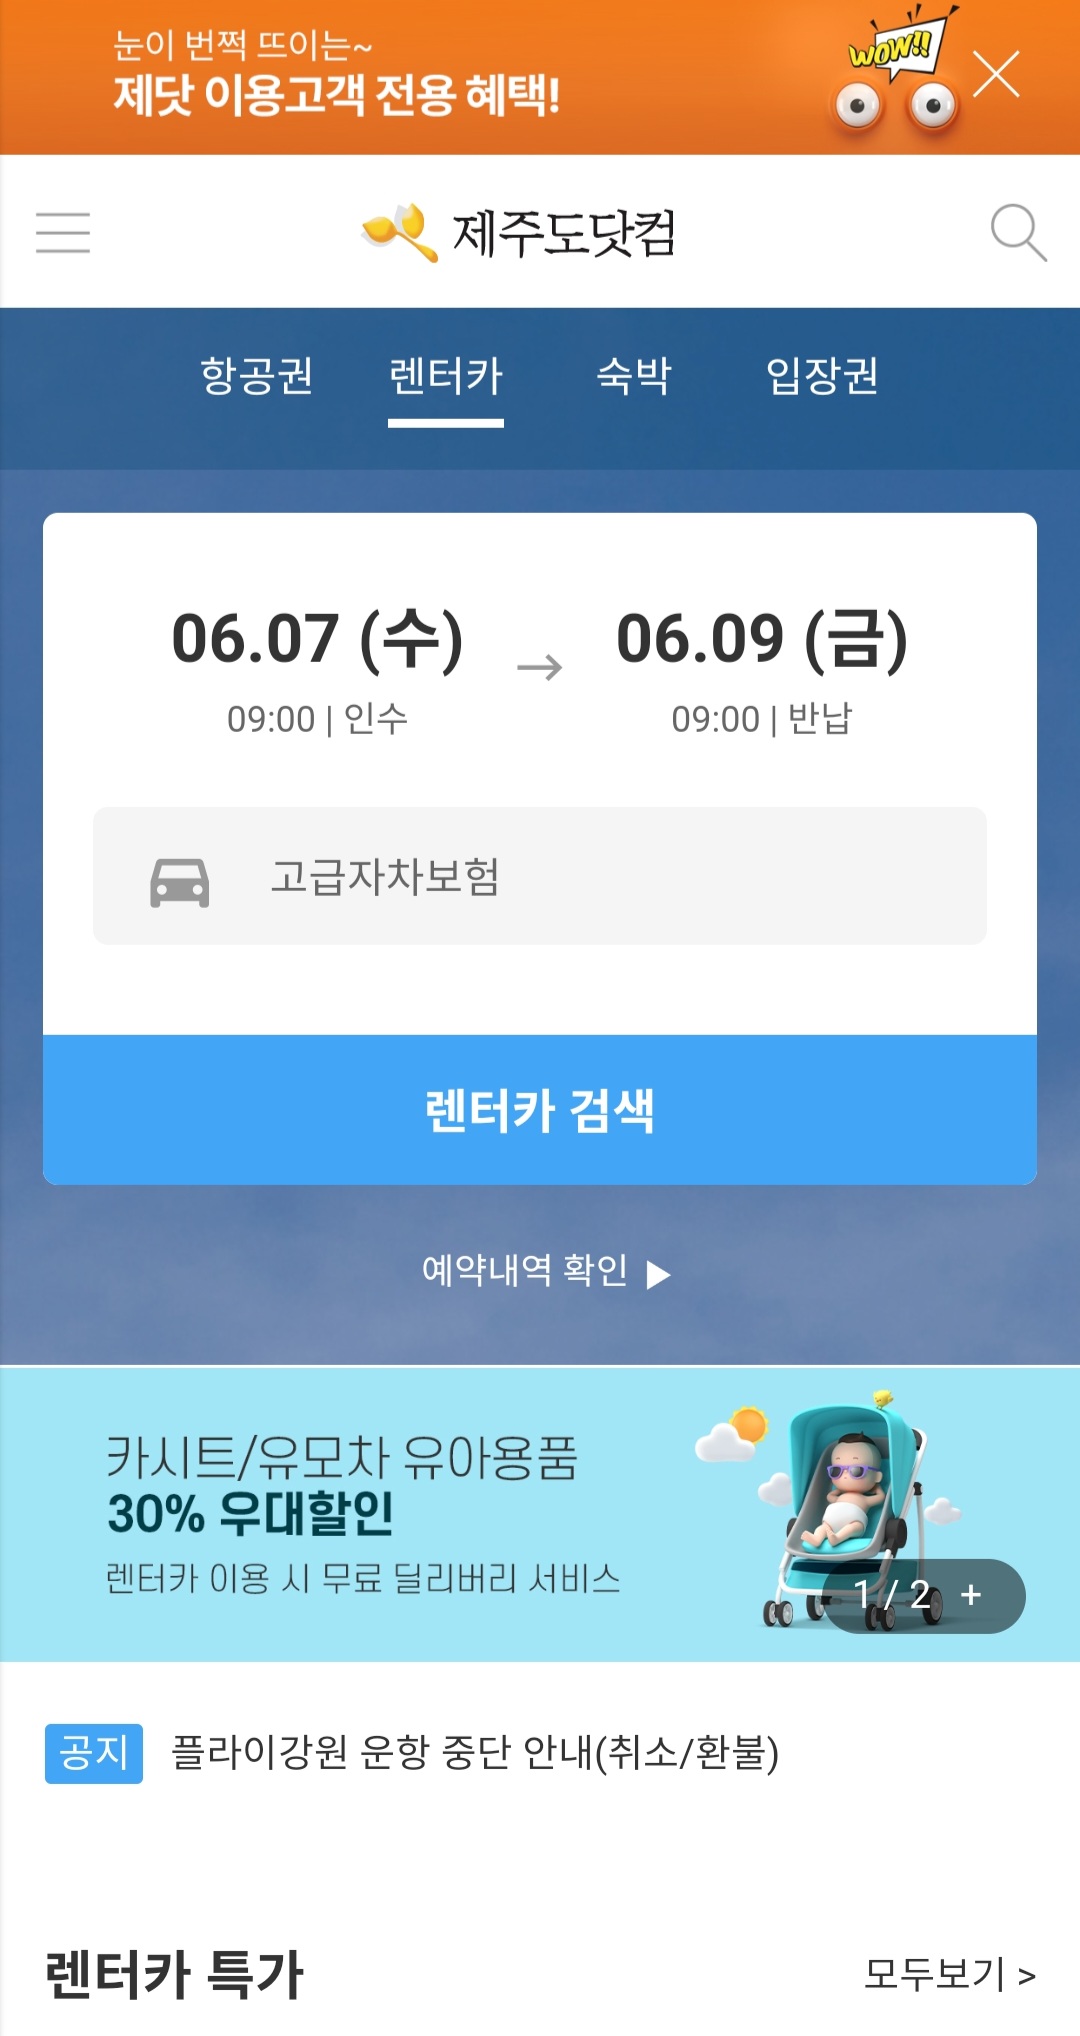 제주도 렌터카 완전자차 가격비교 제주도닷컴으로 간편하게!